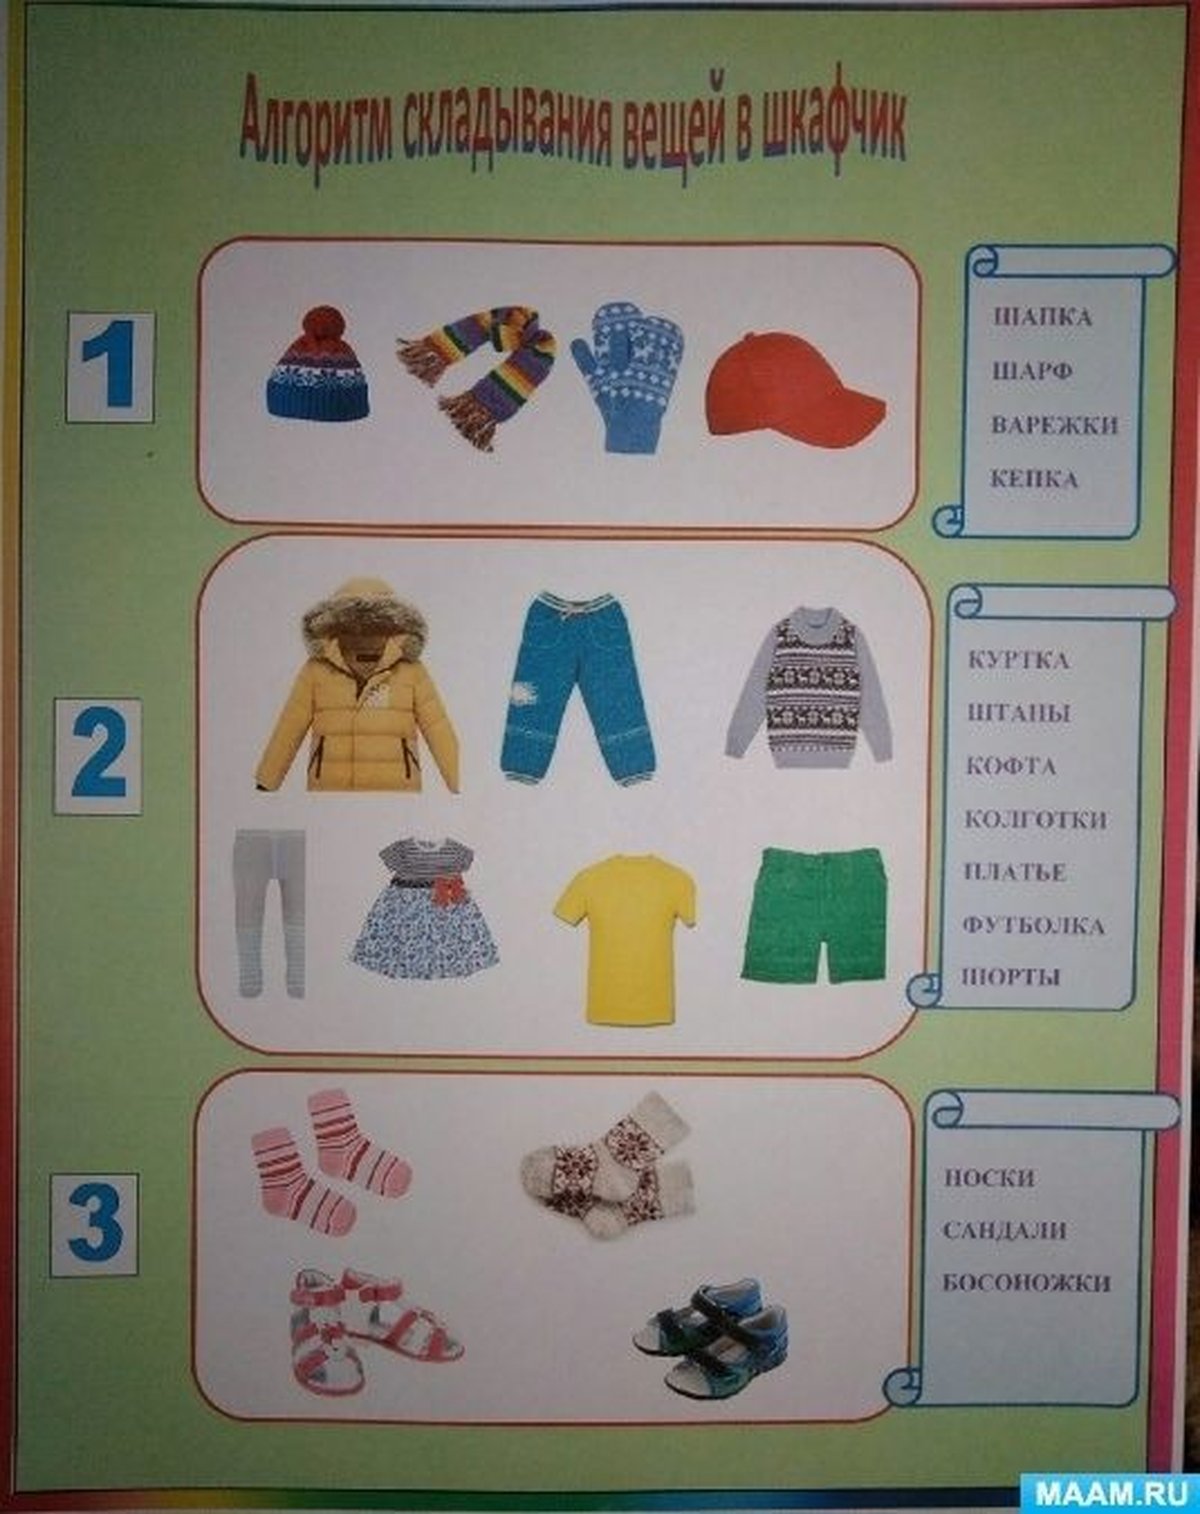 Вещи для садика. Алгоритм складывания вещей в шкаф в детском саду. Алгоритм складывания вещей для детей в шкафчике в детском саду. Алгоритм складывания одежды в шкафчик в детском саду. Алгоритм складывания одежды детей в детском саду.